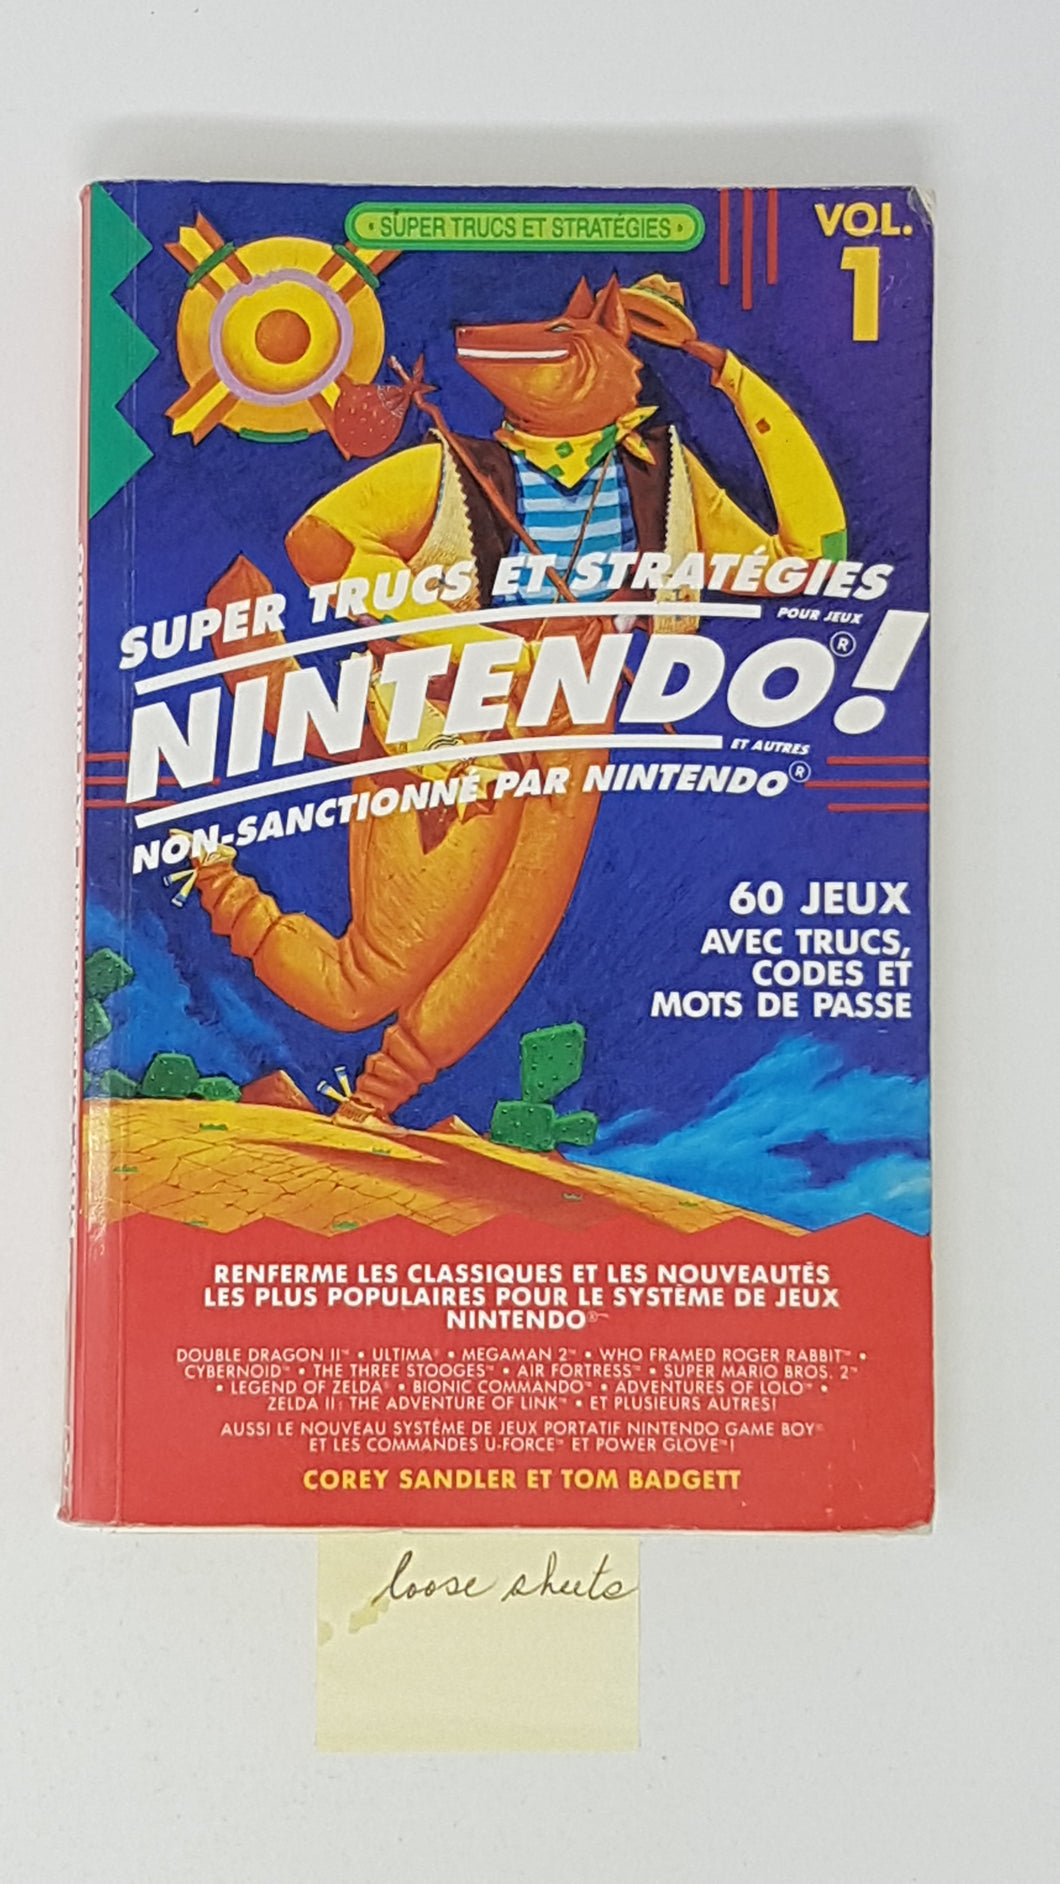 Super Trucs et Strategies Nintendo Vol. 1 - Strategy Guide